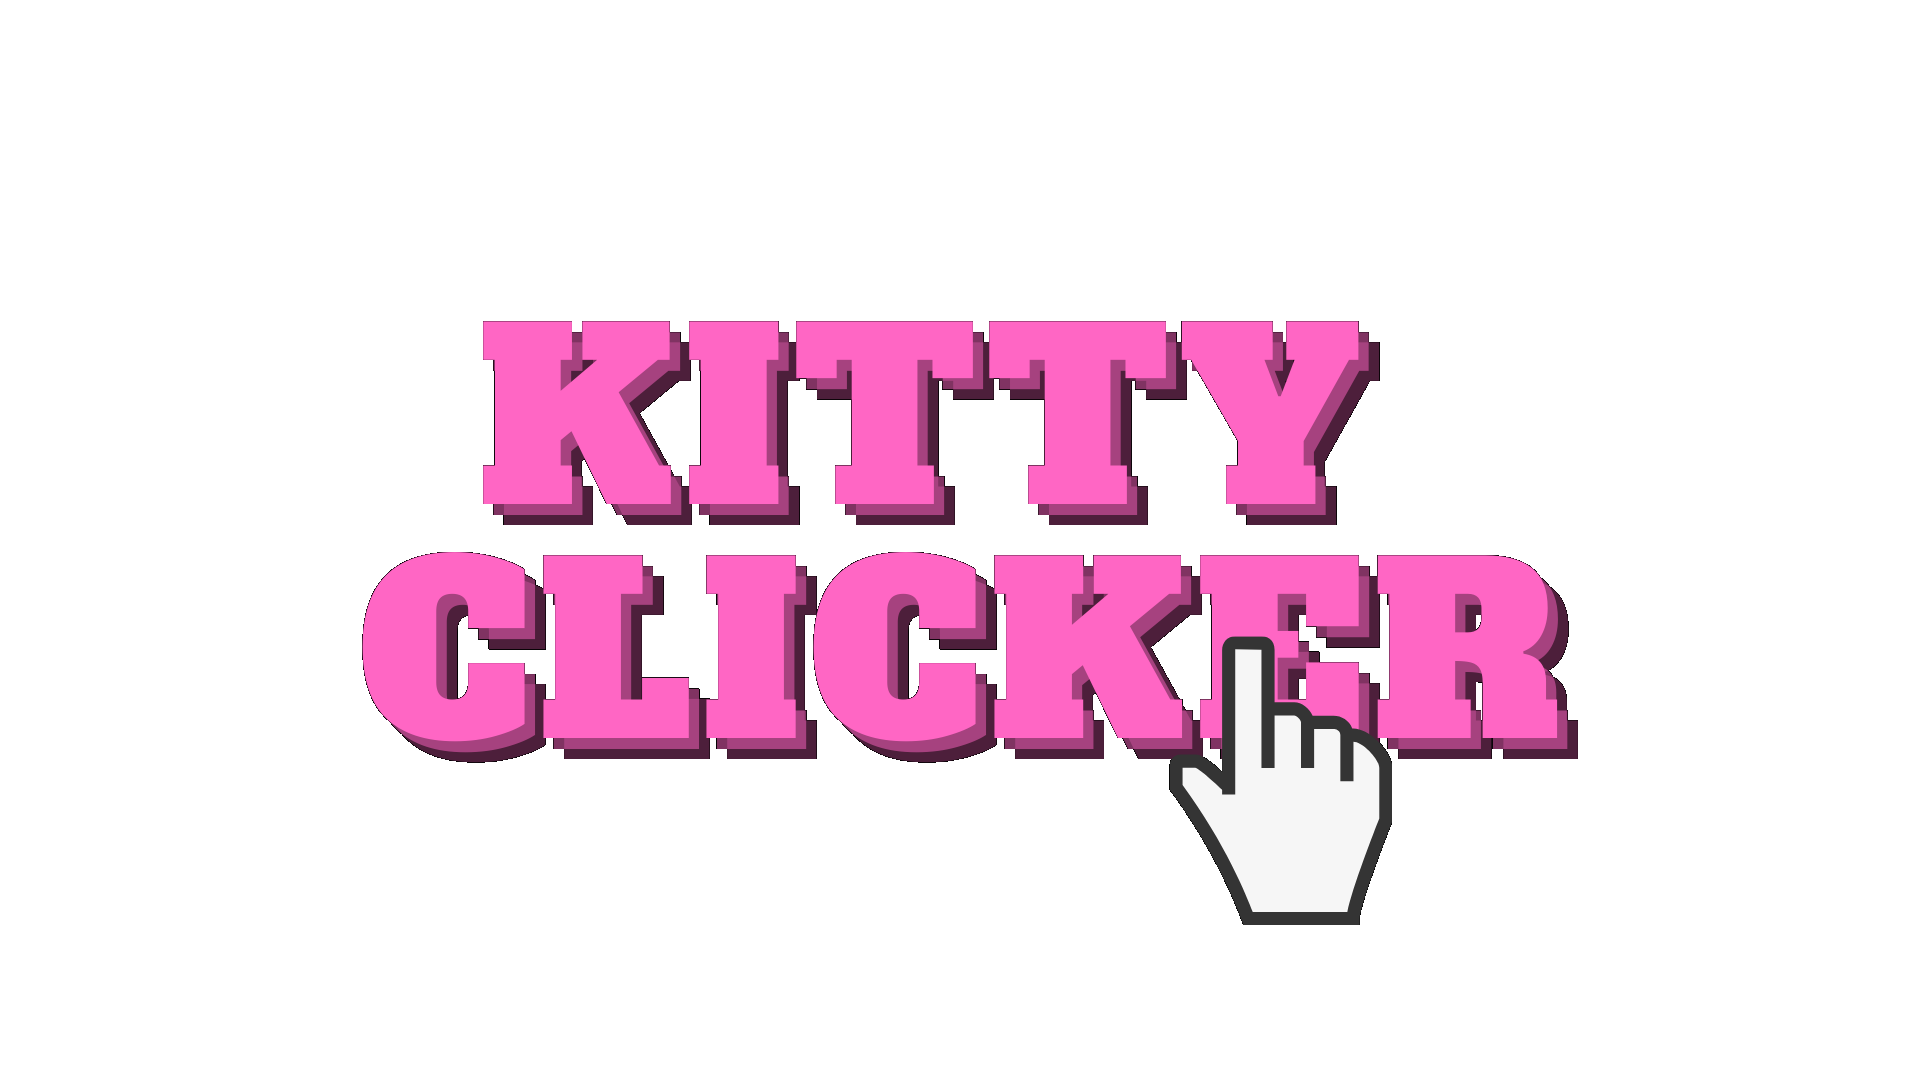 KITTY CLICKER